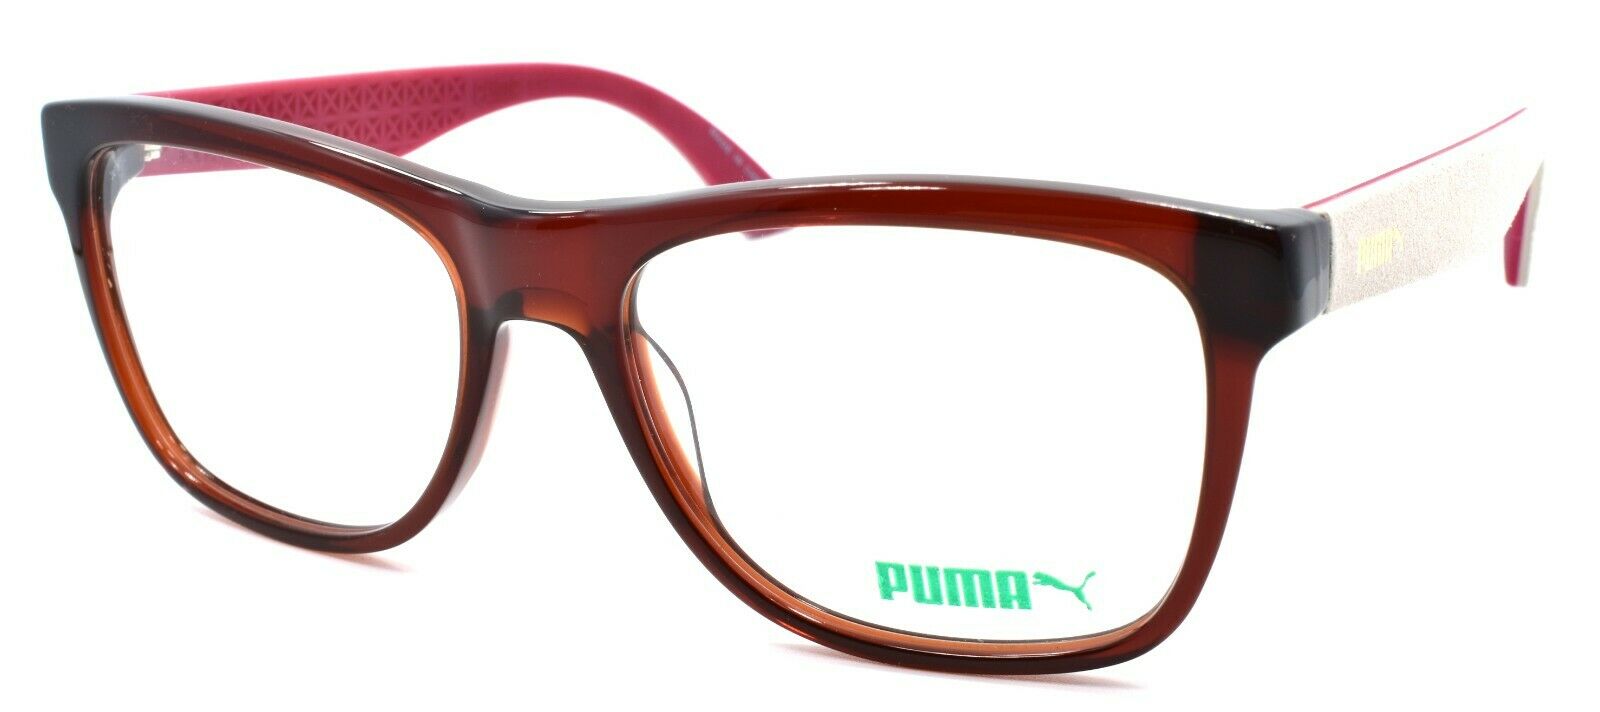 1-PUMA PU0044O 005 Unisex Eyeglasses Frames 54-17-140 Red & Ivory w/ Suede-889652015323-IKSpecs